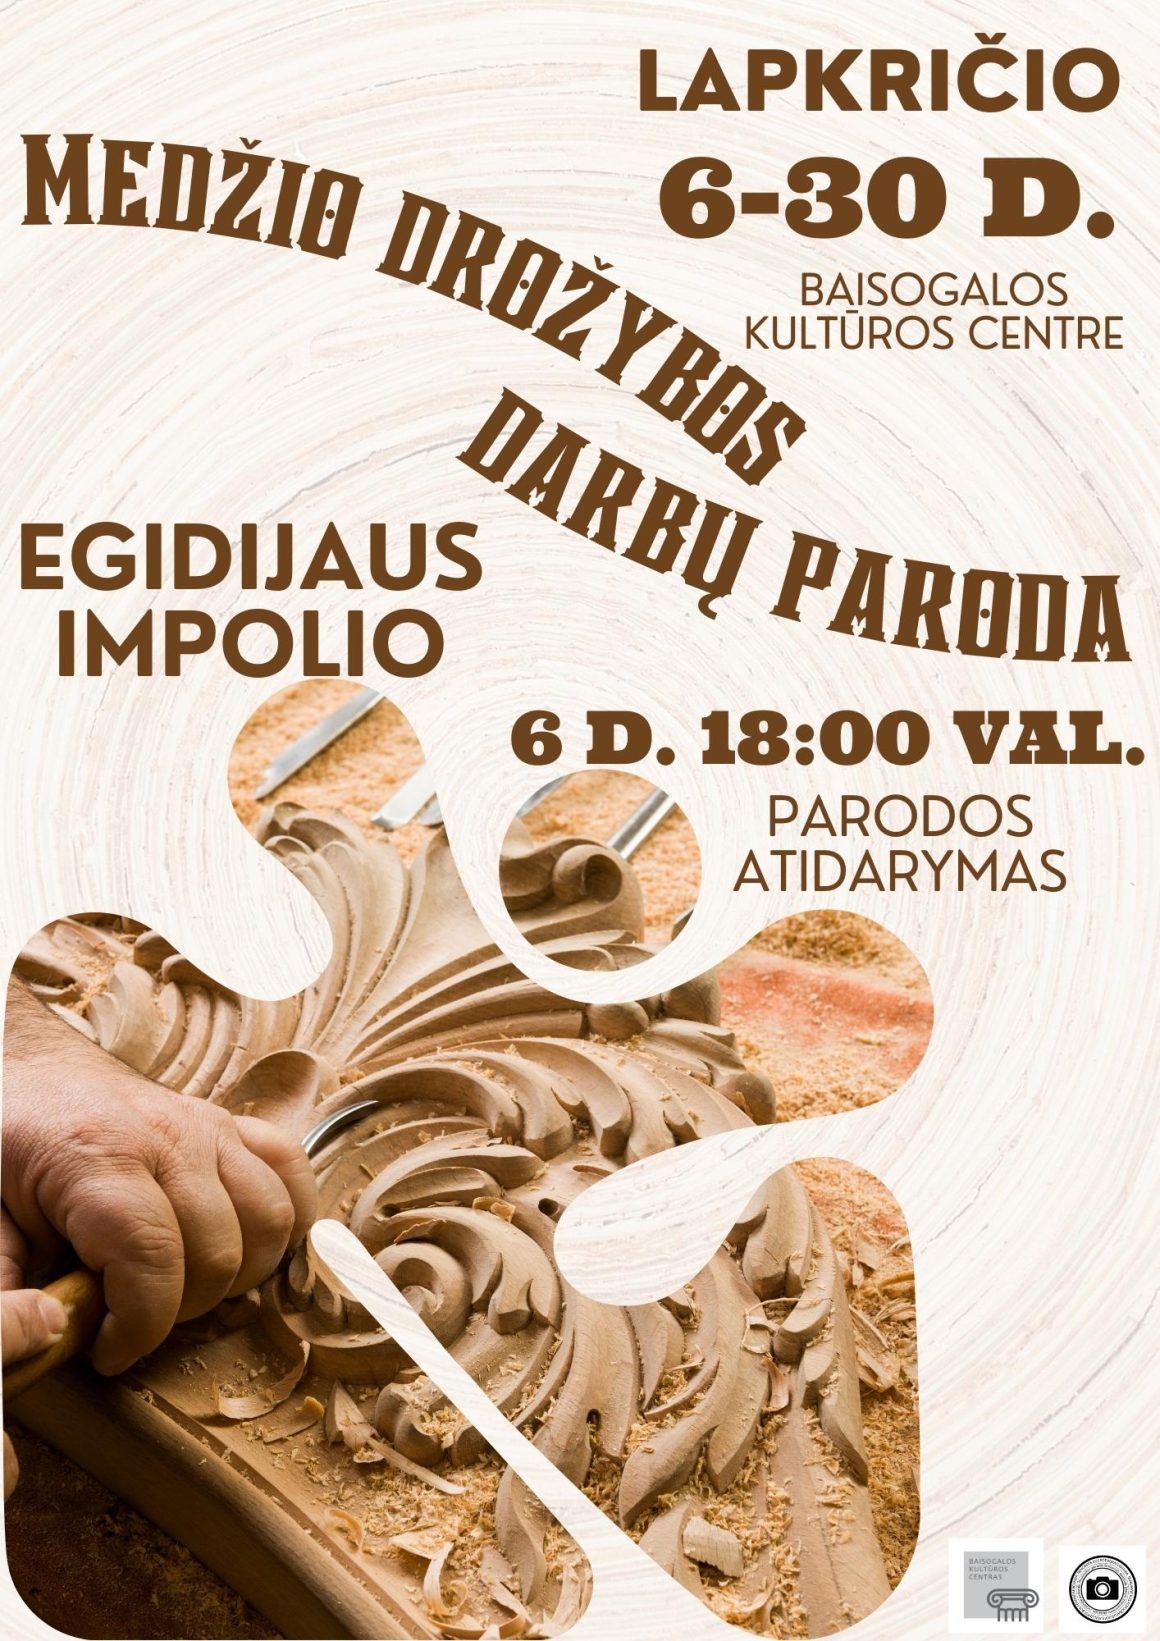 Egidijaus Impolio medžio drožybos darbų paroda